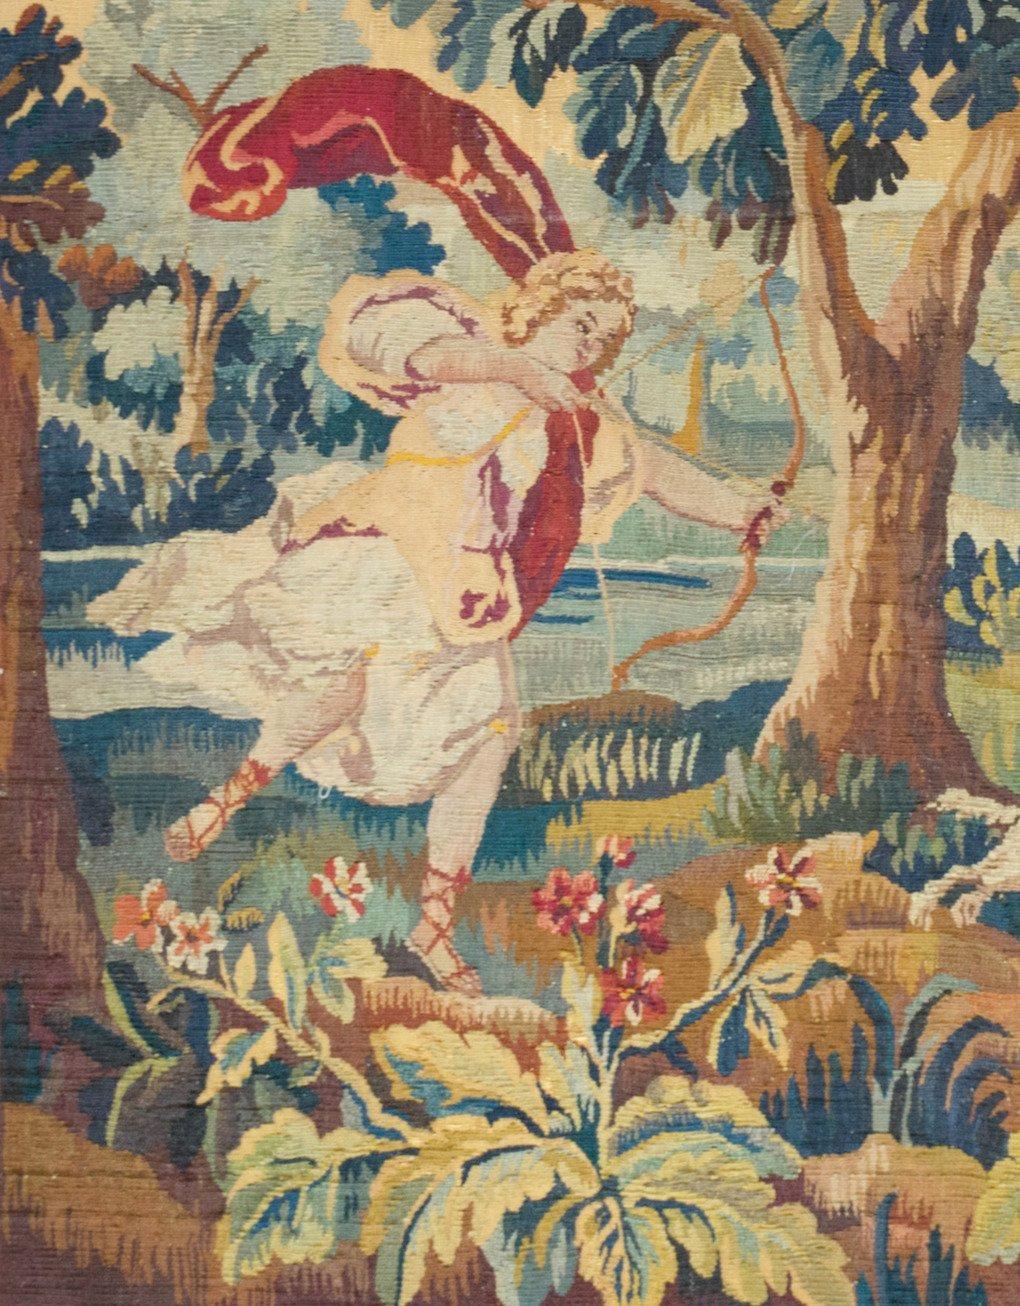 Tapisserie de verdure française ancienne du 19ème siècle représentant un paysage immaculé et charmant sur les rives d'une rivière avec Cupidon chassant le cerf. La scène est entourée de terrains verdoyants et fleuris, d'un château et de montagnes au